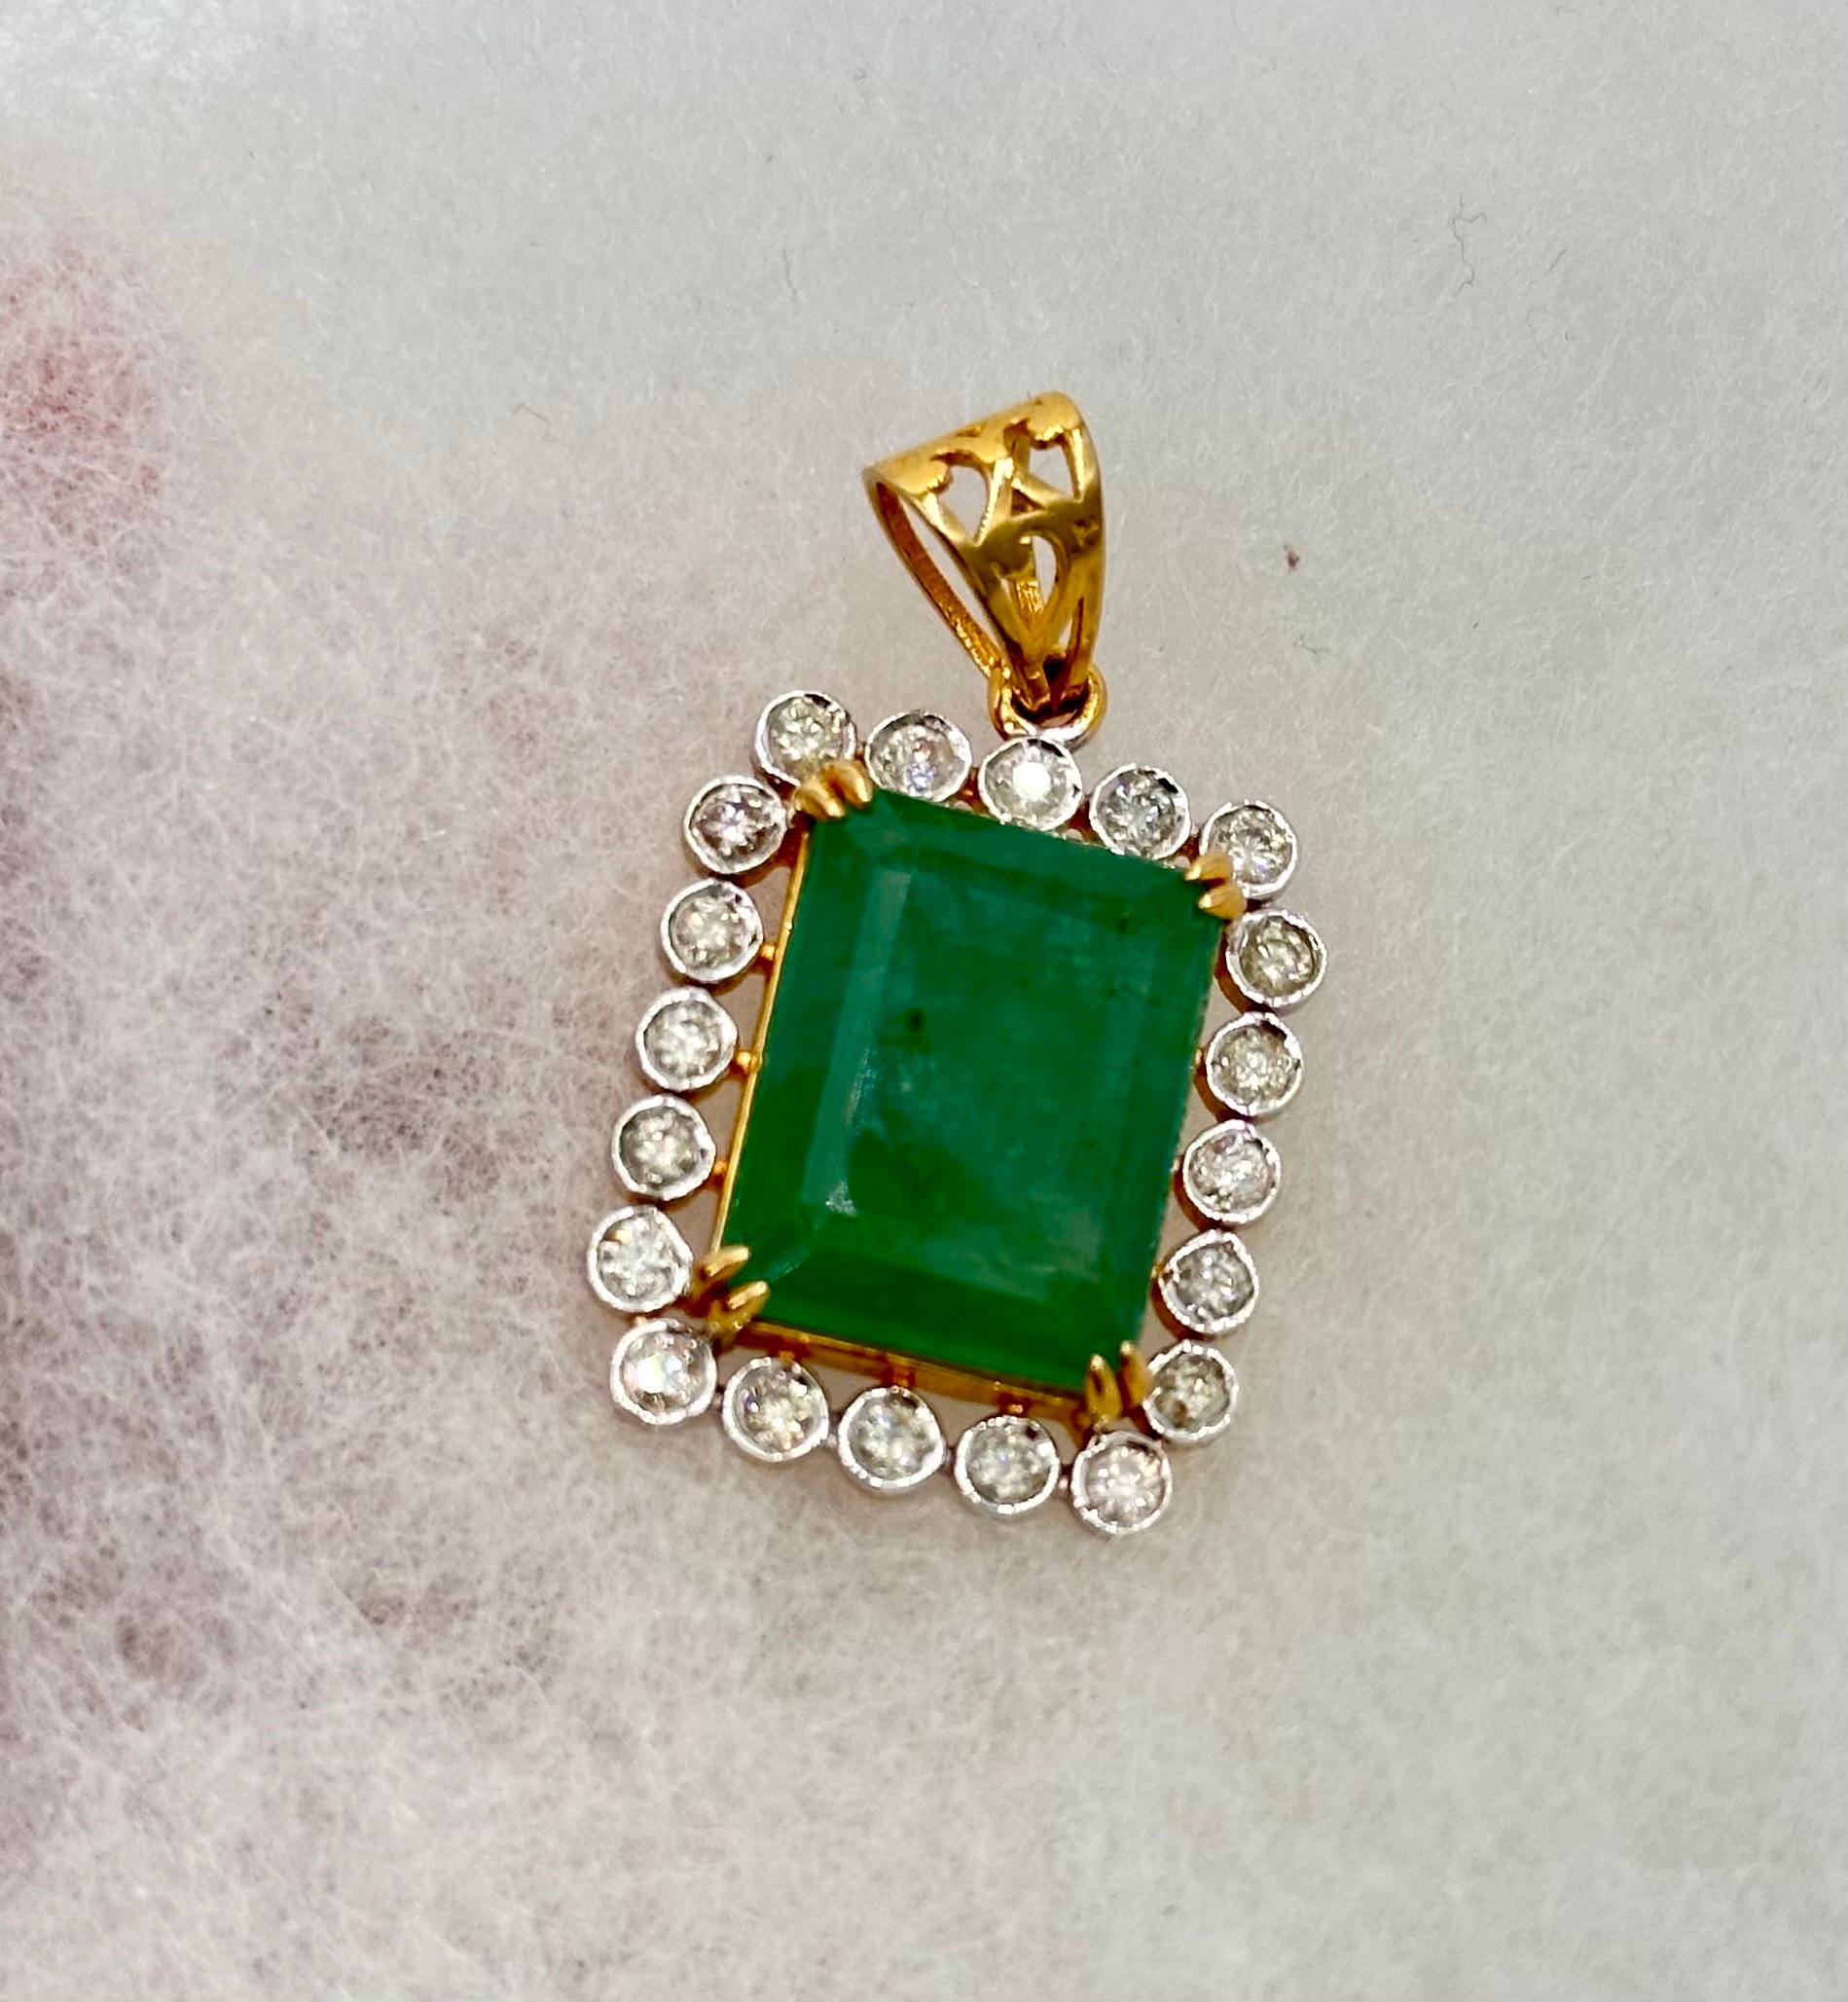 IGI Certified Natural Diamond Emerald Pendant Hallmark 18K Gold Emerald Pendant In New Condition For Sale In Delhi, DL